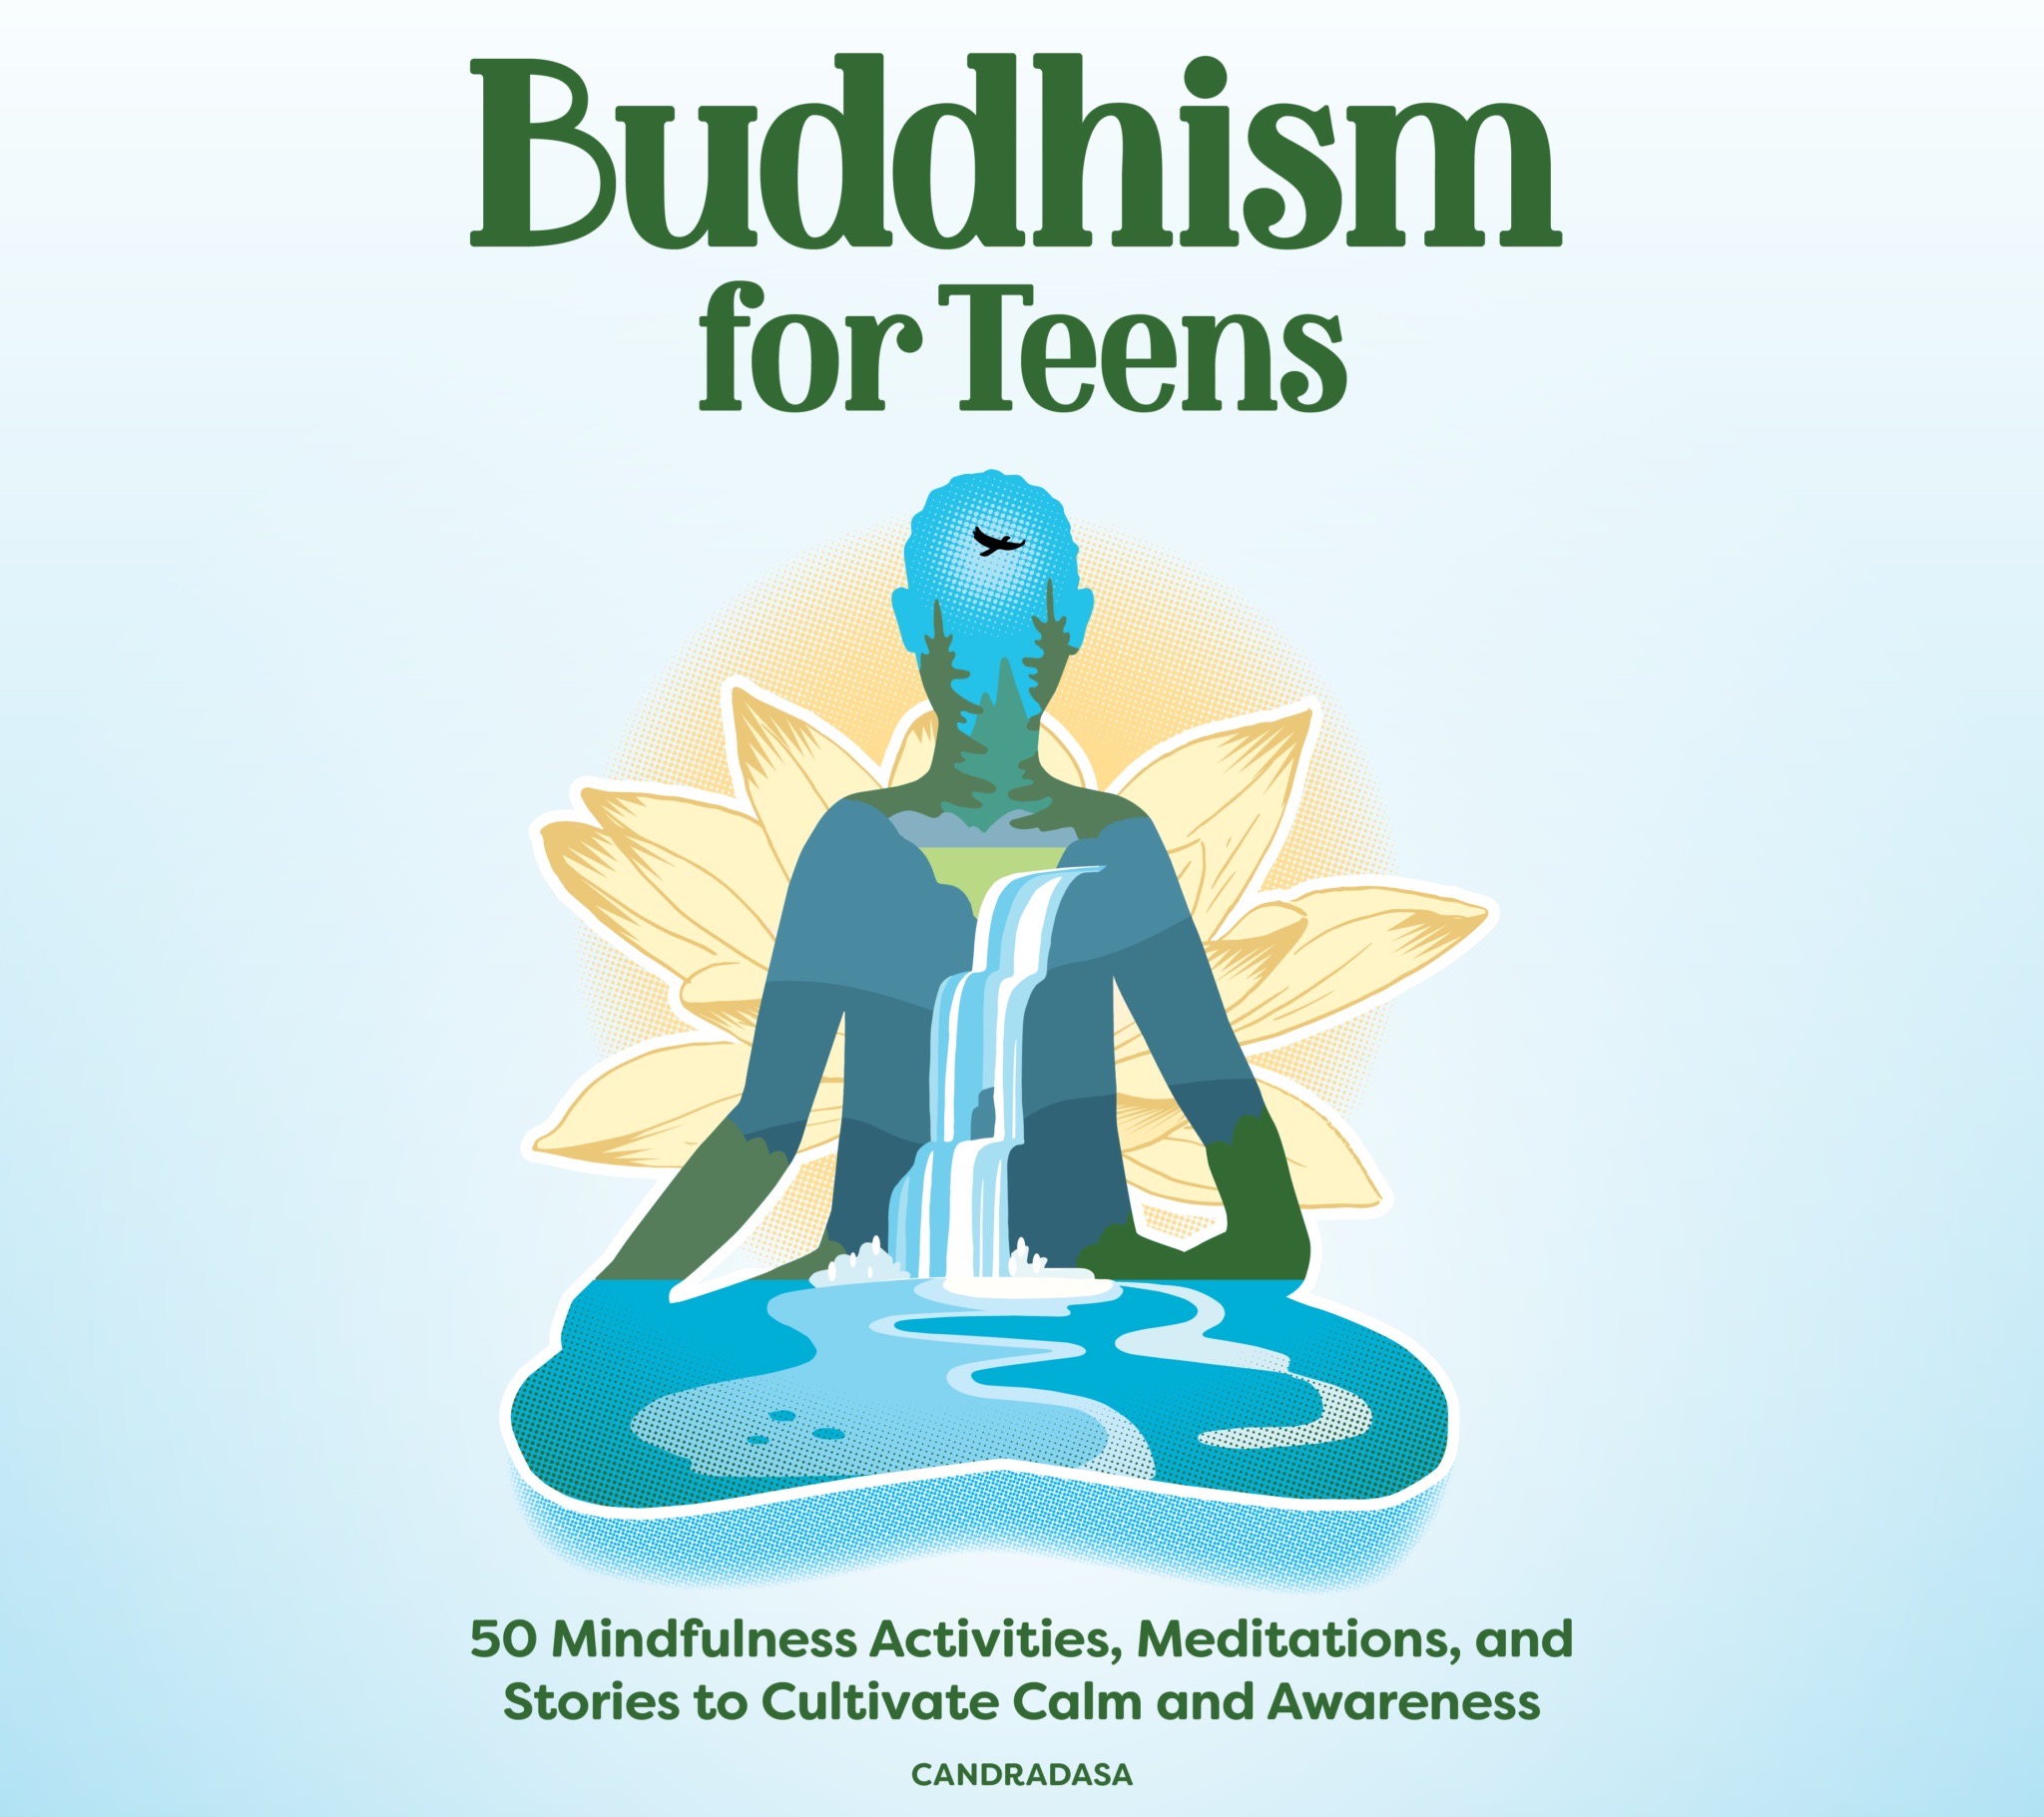 ਡਾਉਨਲੋਡ ਕਰੋ Buddhism For Teens (The Buddhist Centre Podcast, Episode 424)